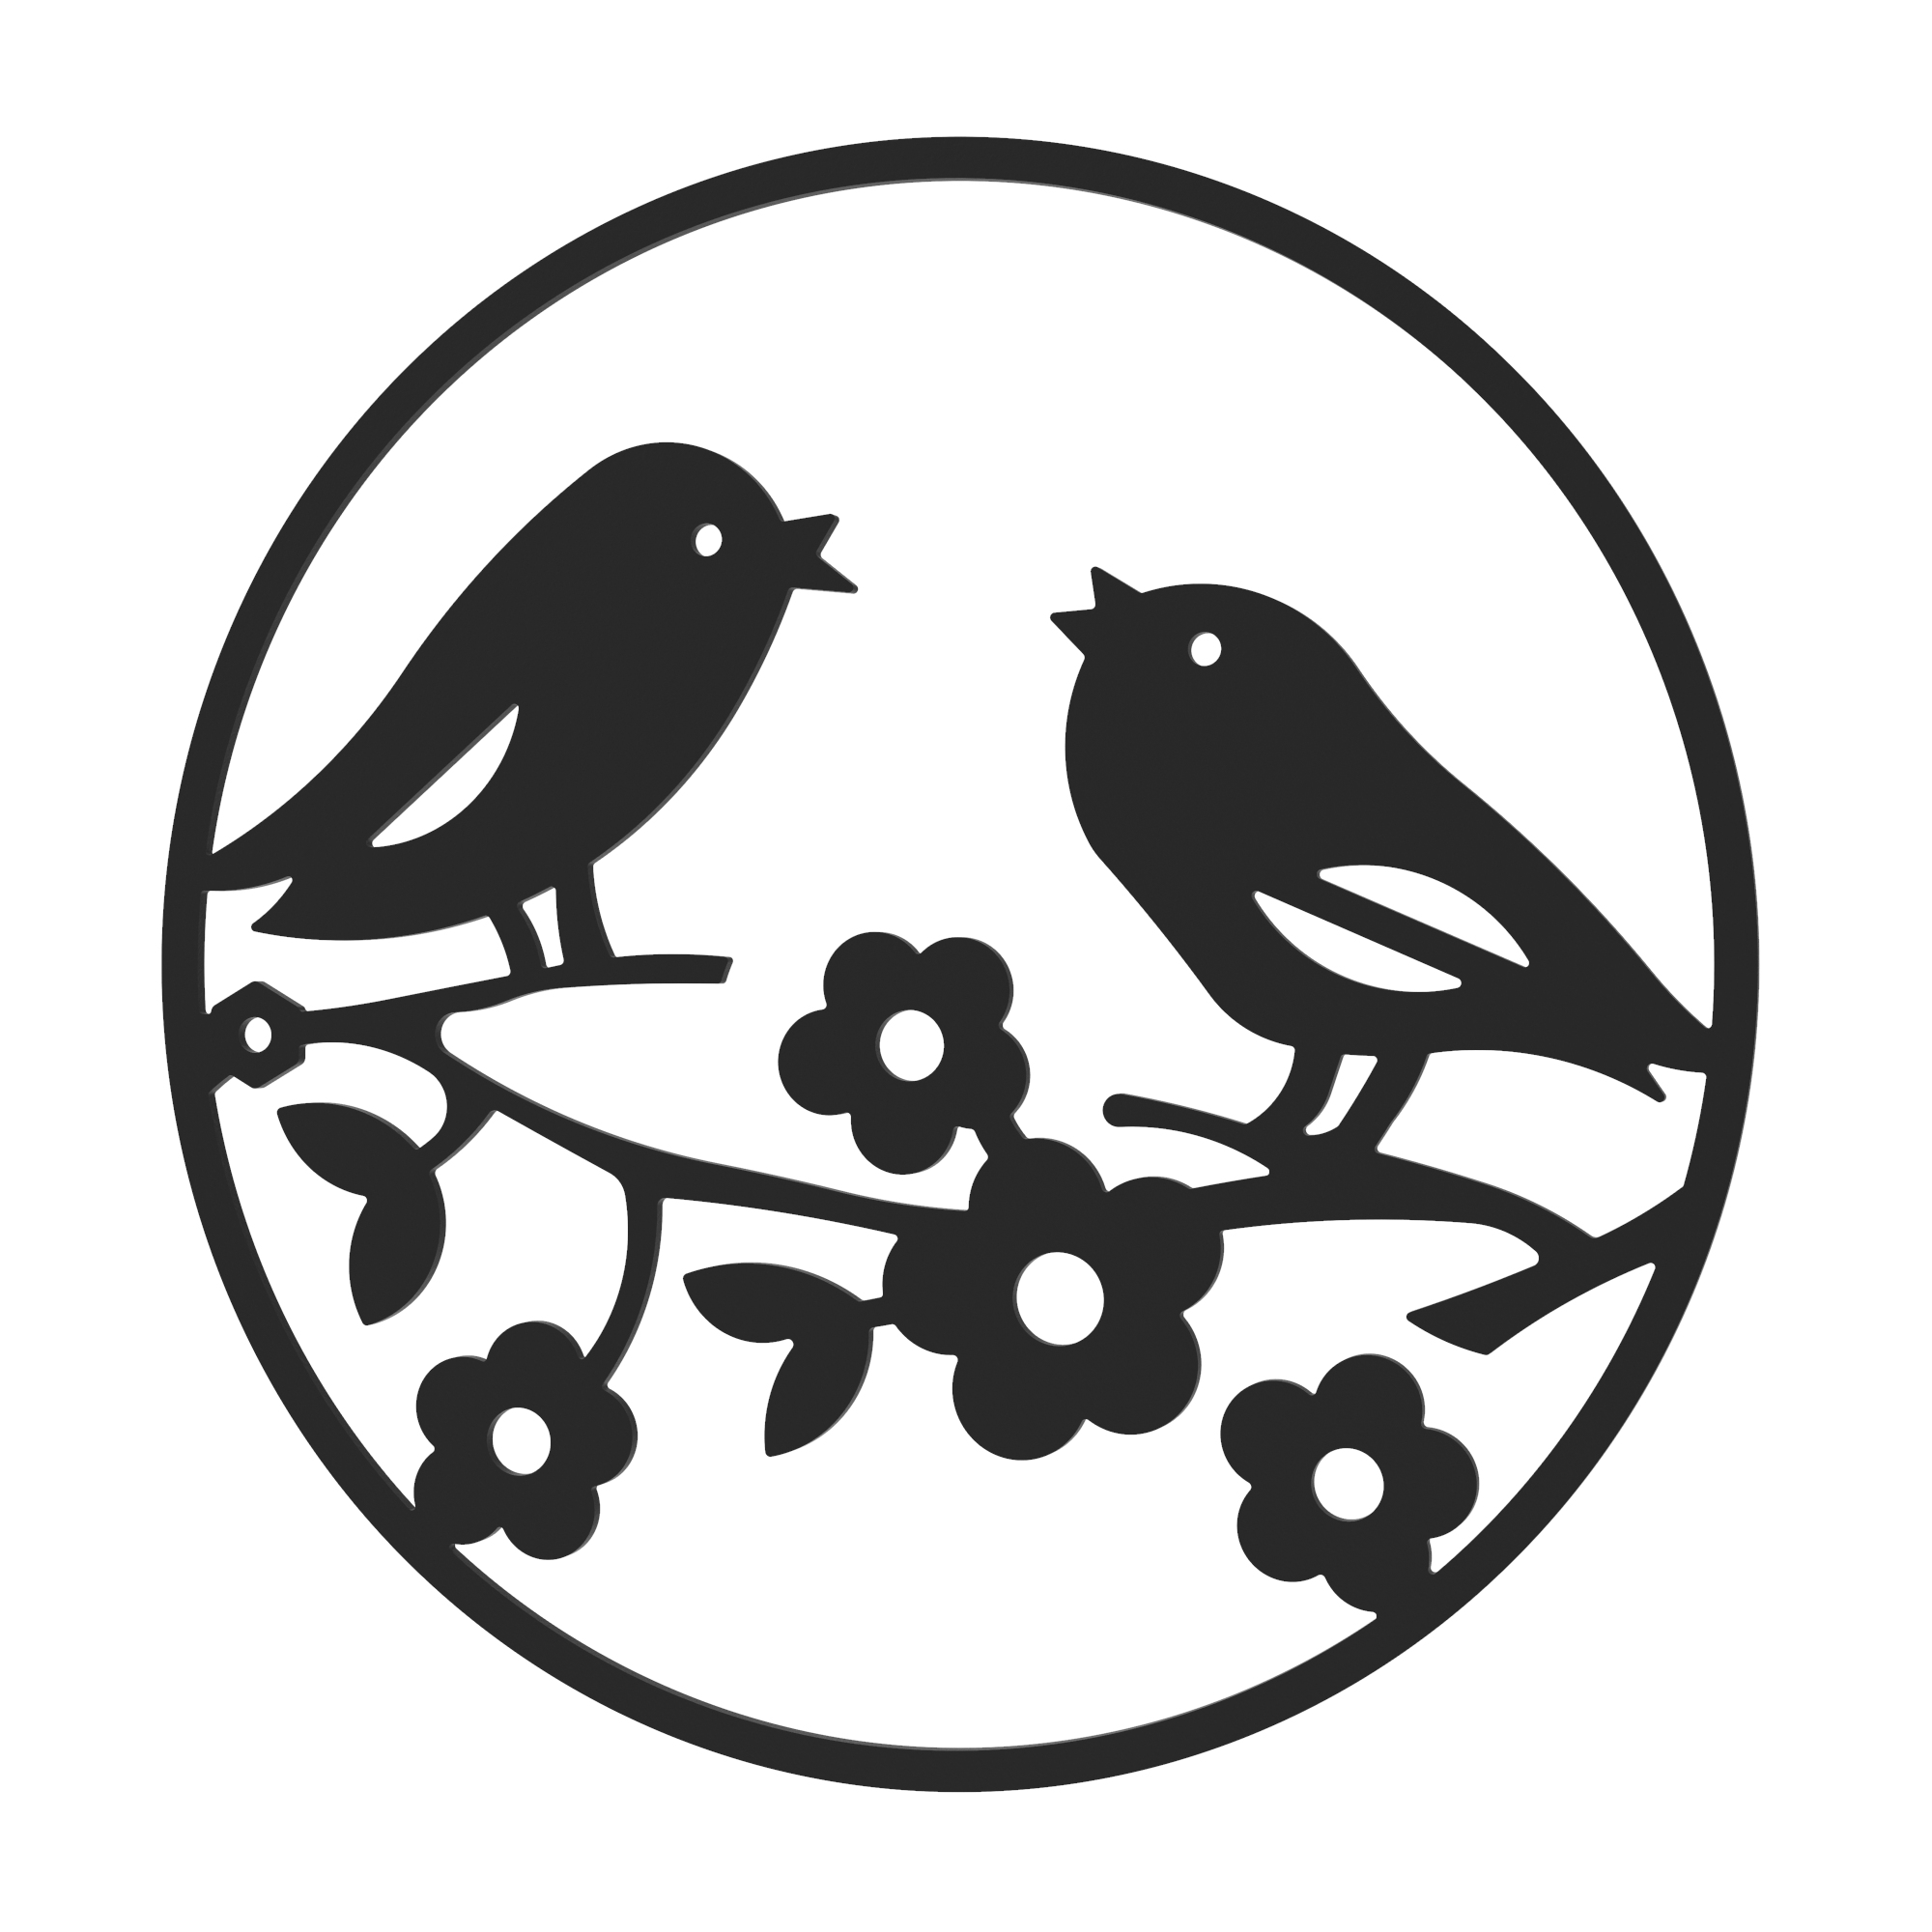 Dekorationskranz BIRDS aus Metall, schwarz, Motiv Sommer